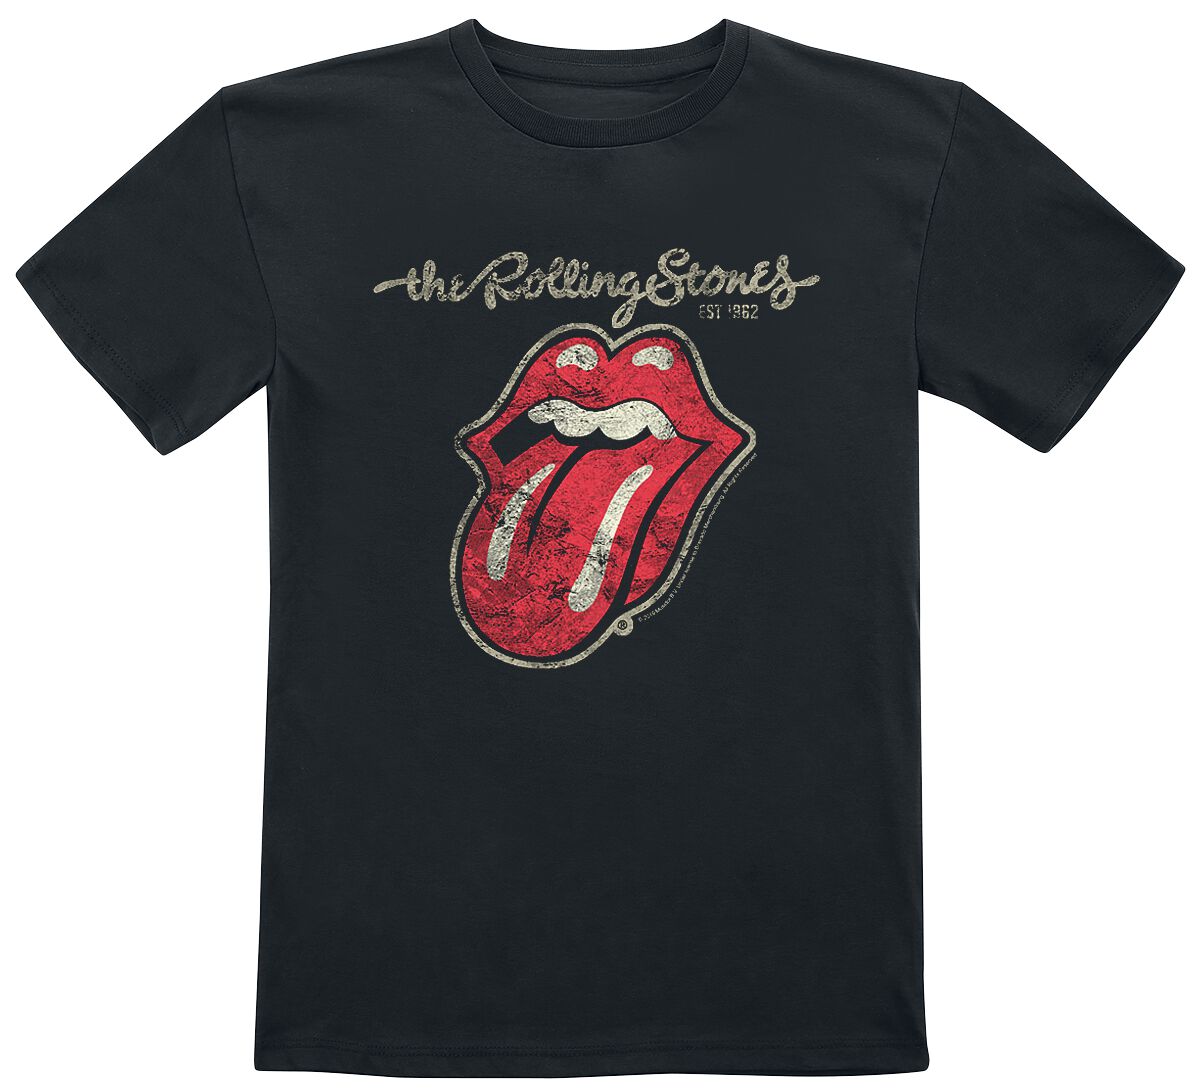 The Rolling Stones T-Shirt für Kinder - Metal-Kids - Classic Tongue - für Mädchen & Jungen - schwarz  - Lizenziertes Merchandise!